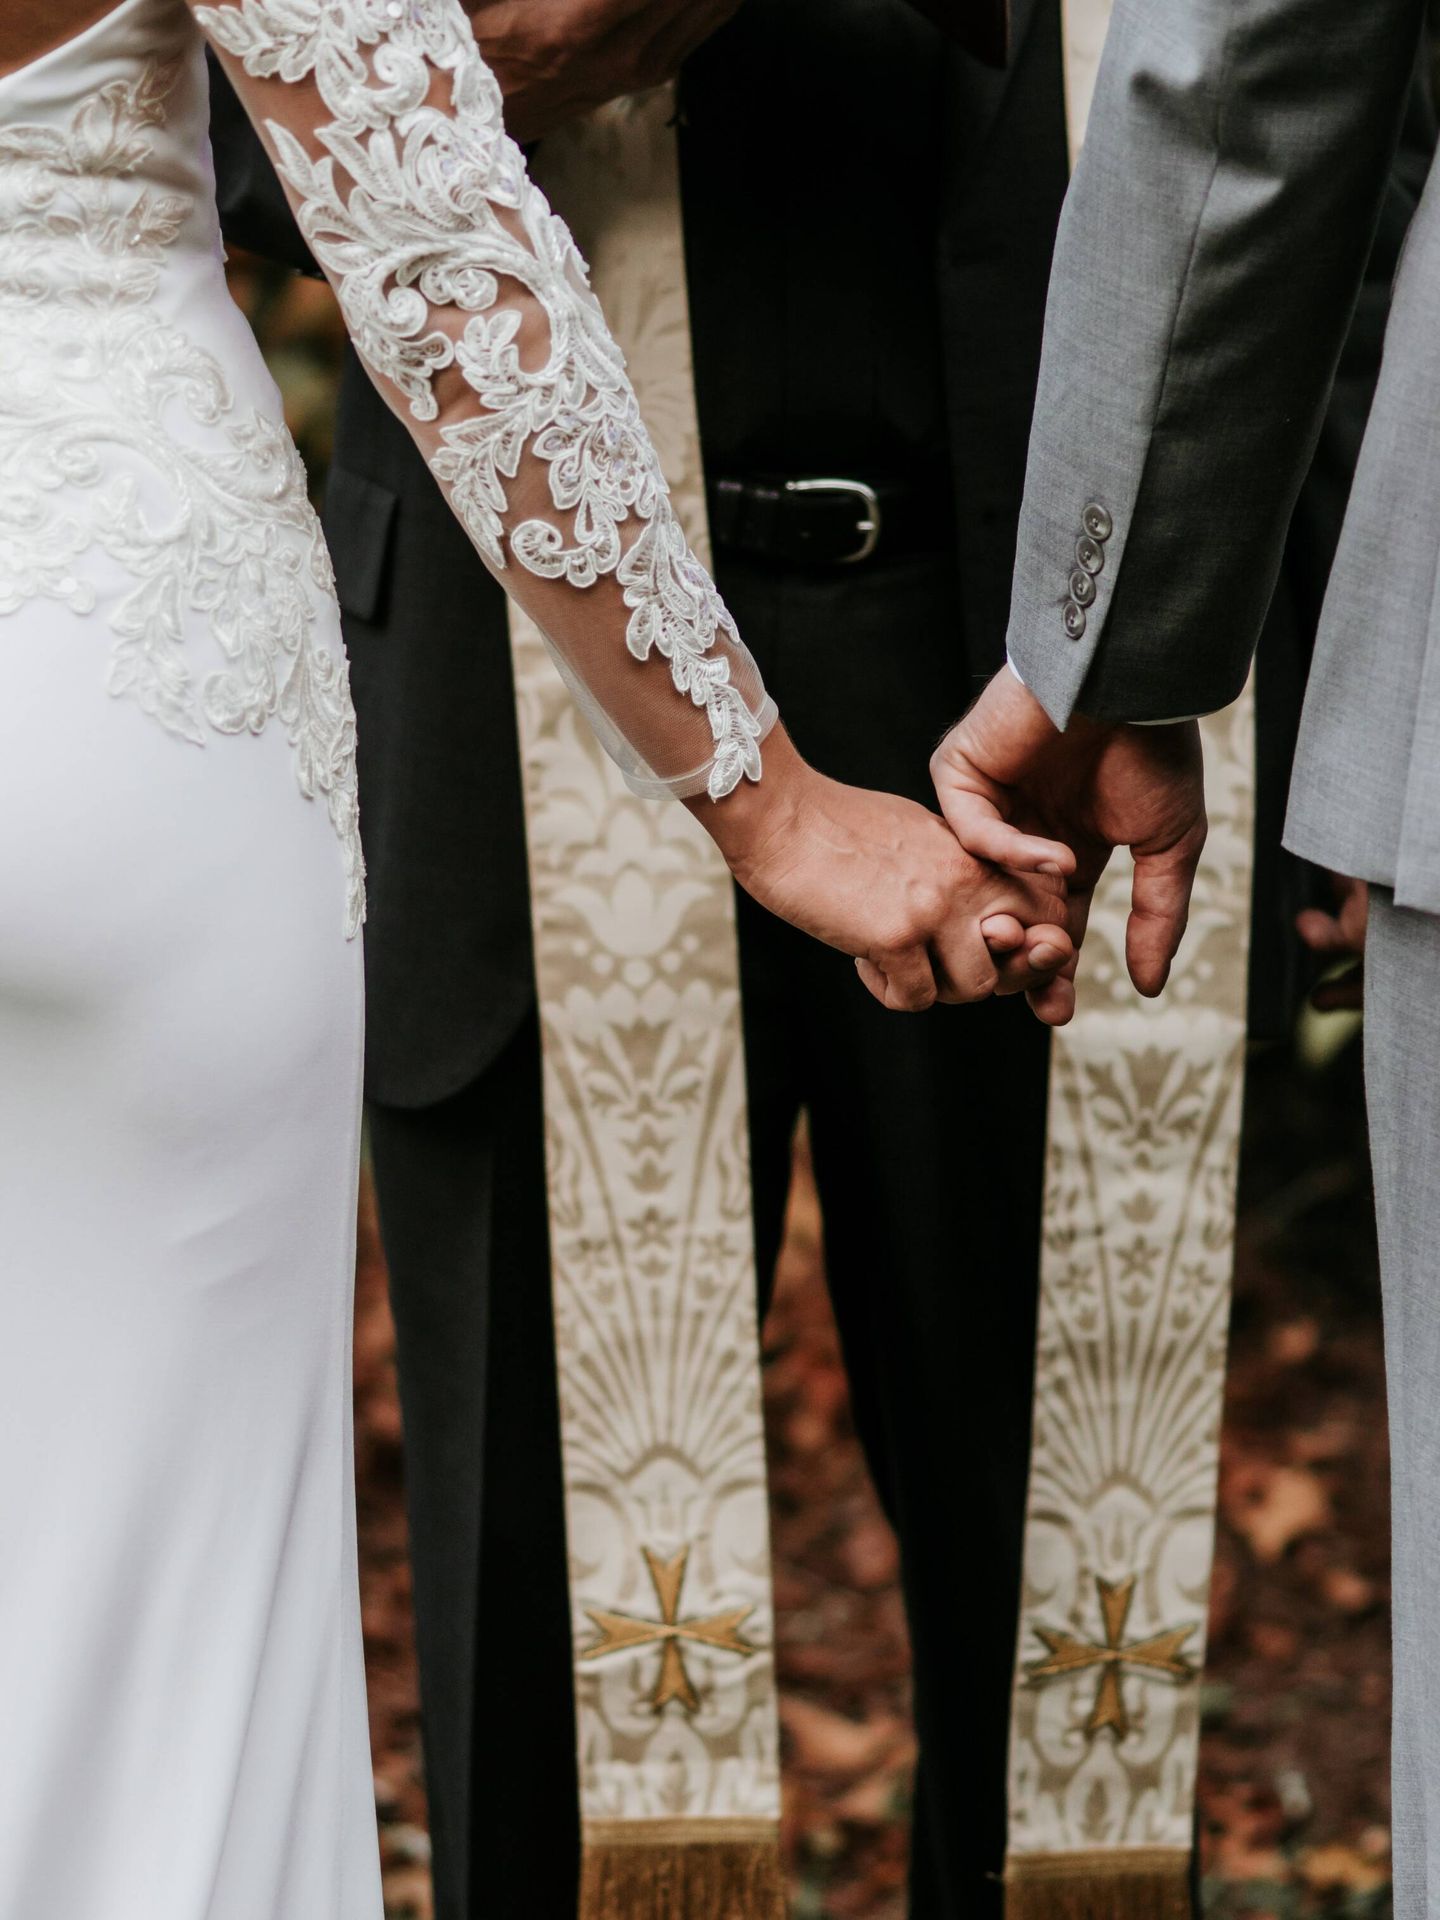 ¿Cómo es una boda civil y en qué se diferencia de una religiosa?. (Unsplash/Zelle Duda)